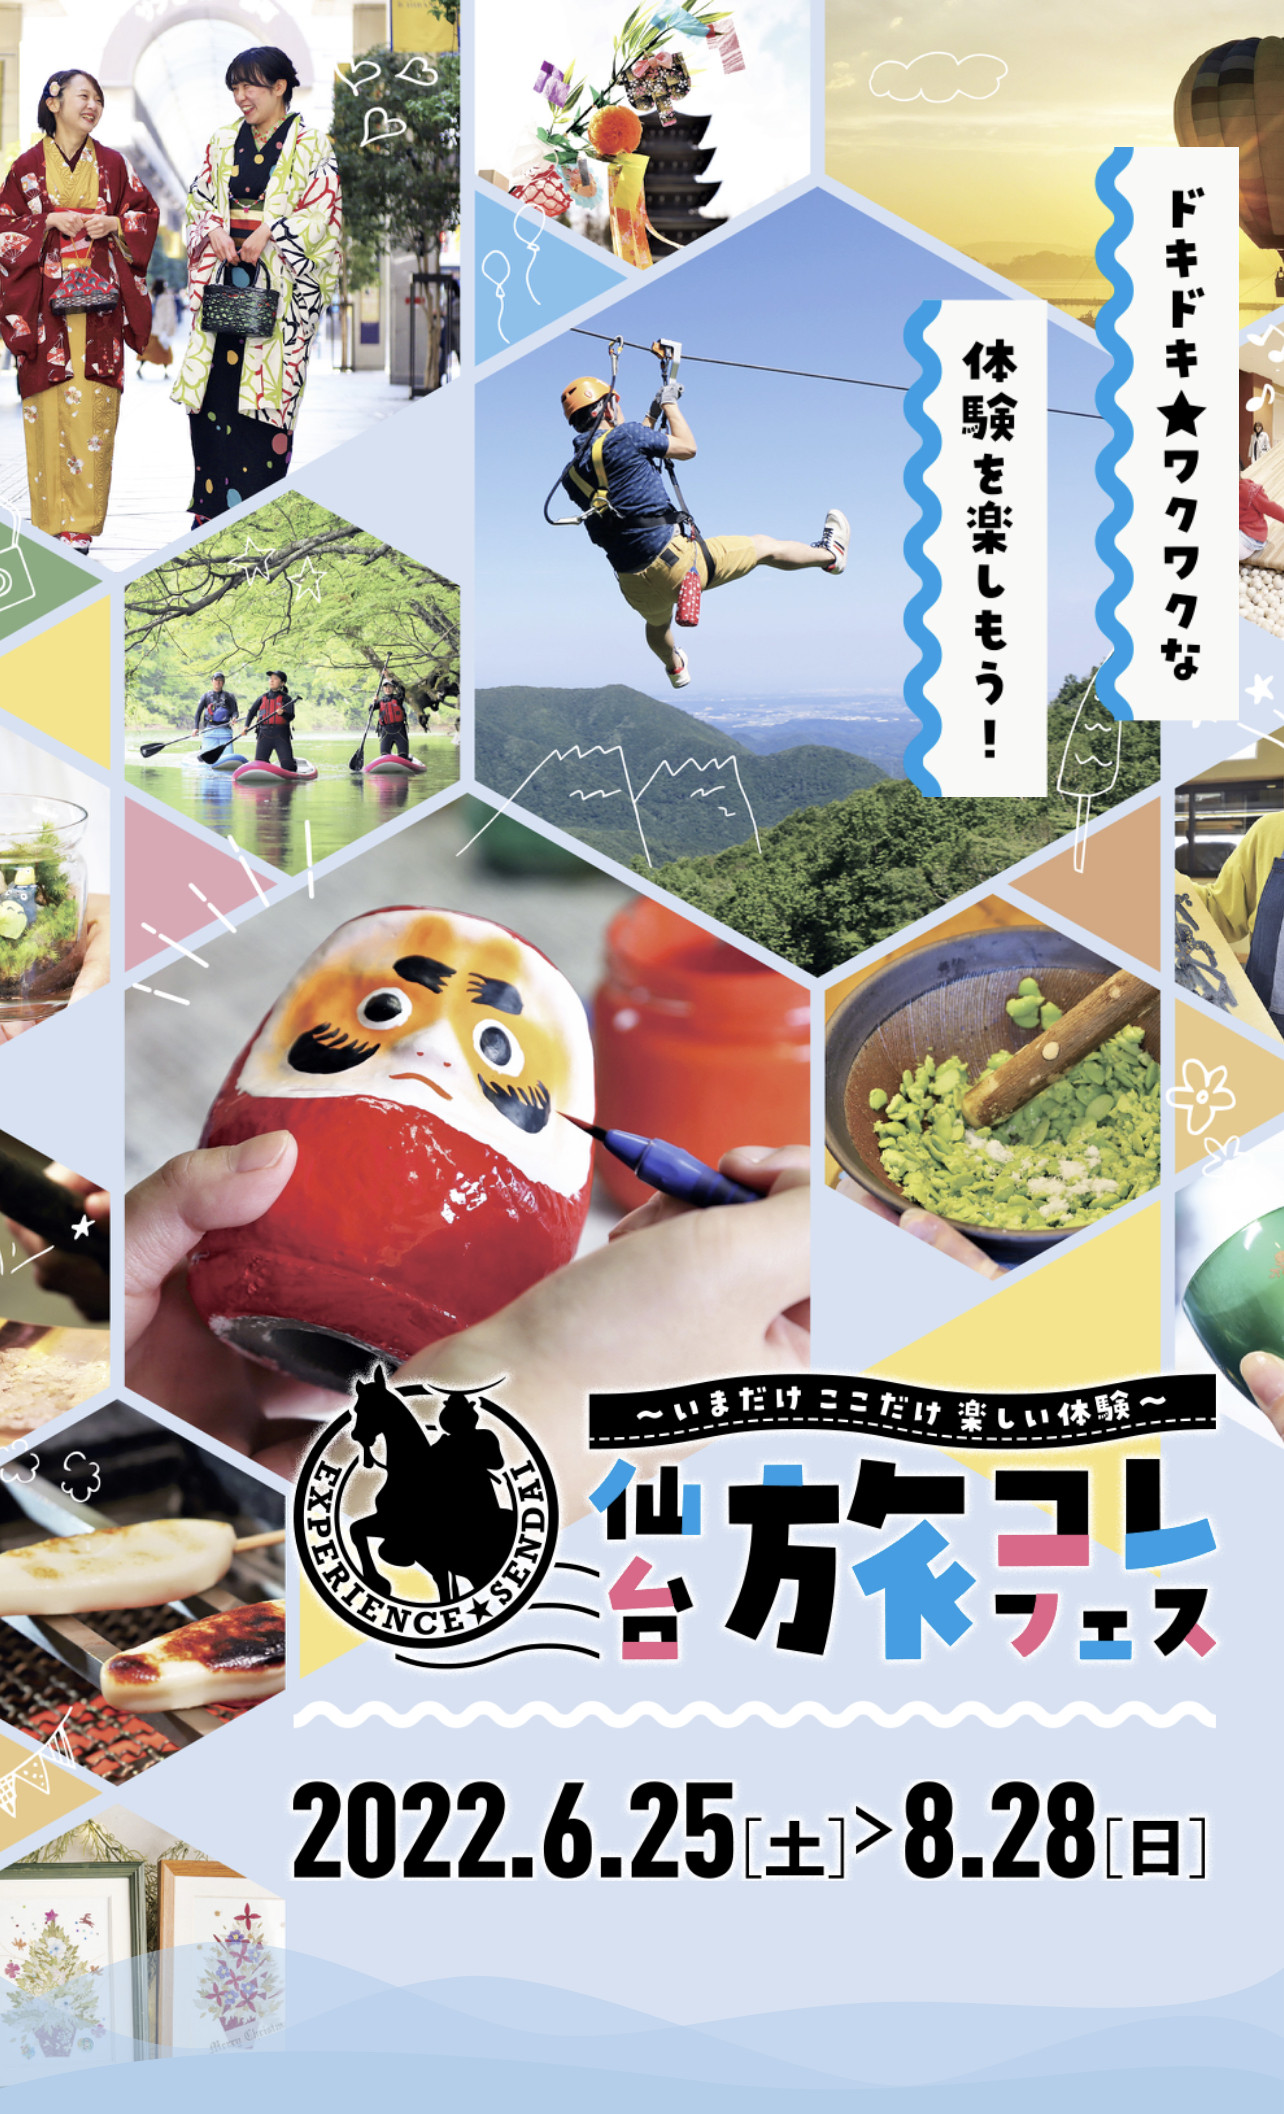 仙台旅先体験コレクションフェスティバル'22オープニングイベント出展